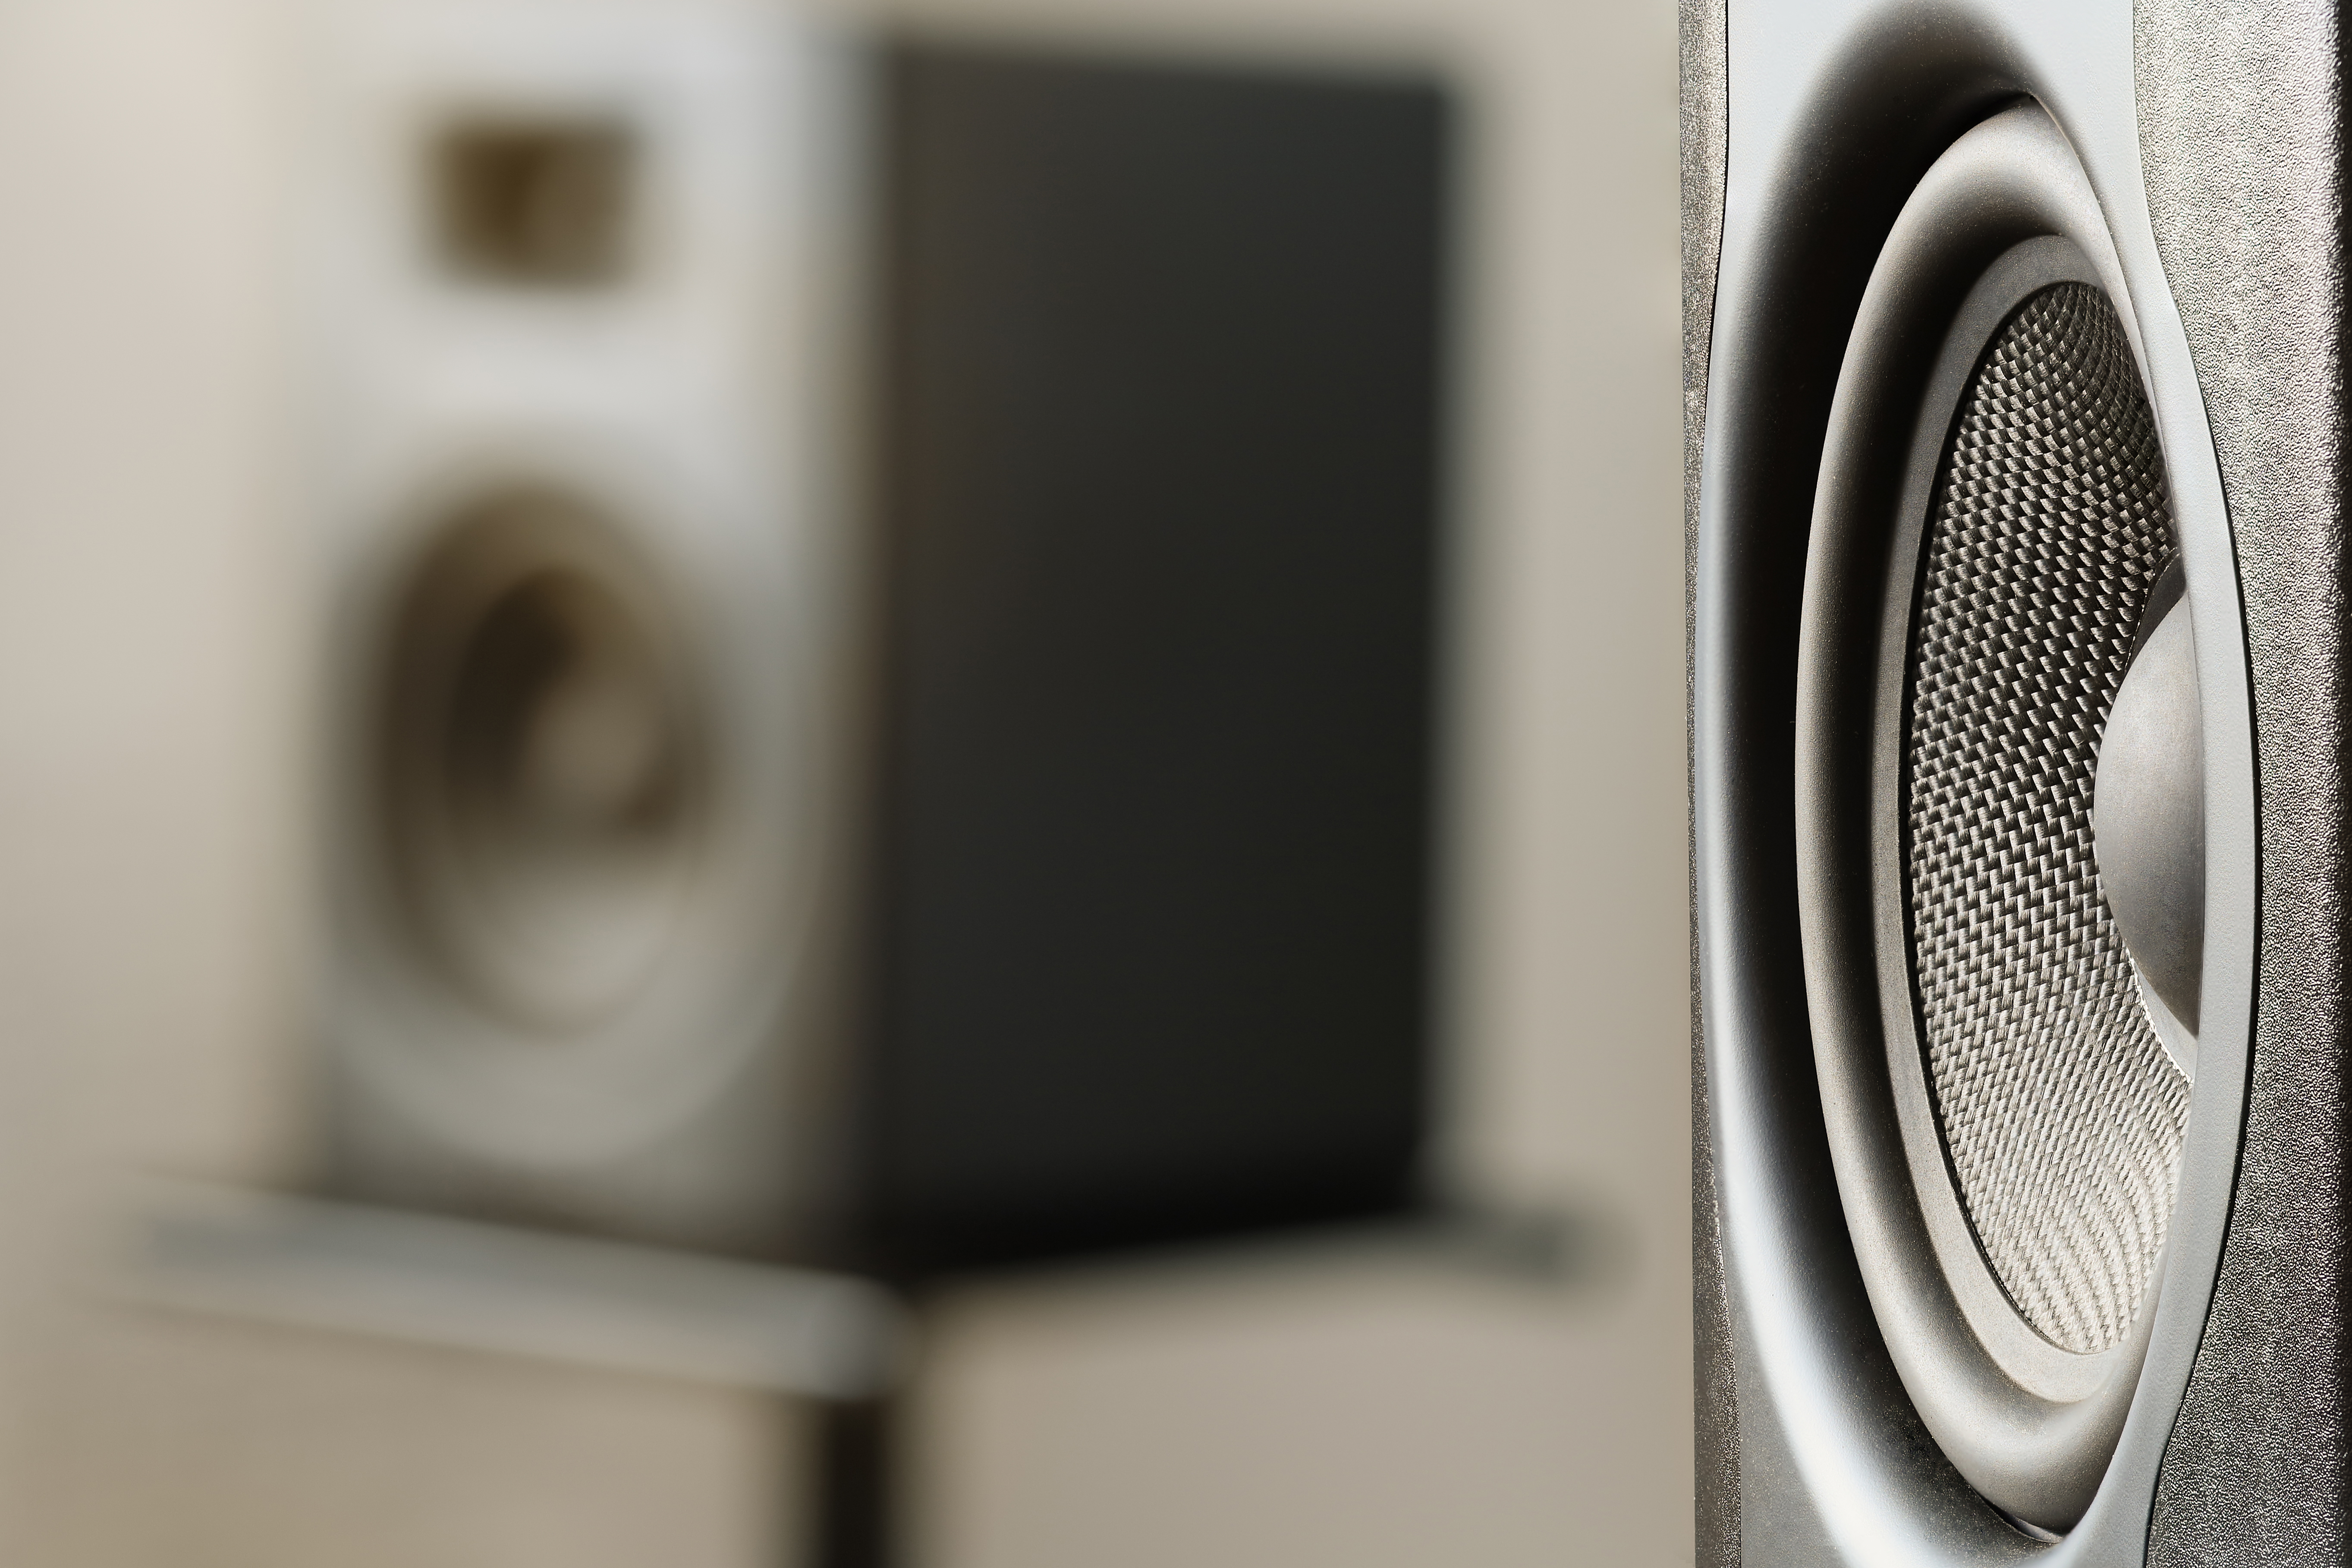 Materialauswahl und Konstruktionsprinzip des Gehäuses haben großen Einfluss auf die Klangqualität eines Lautsprechers 